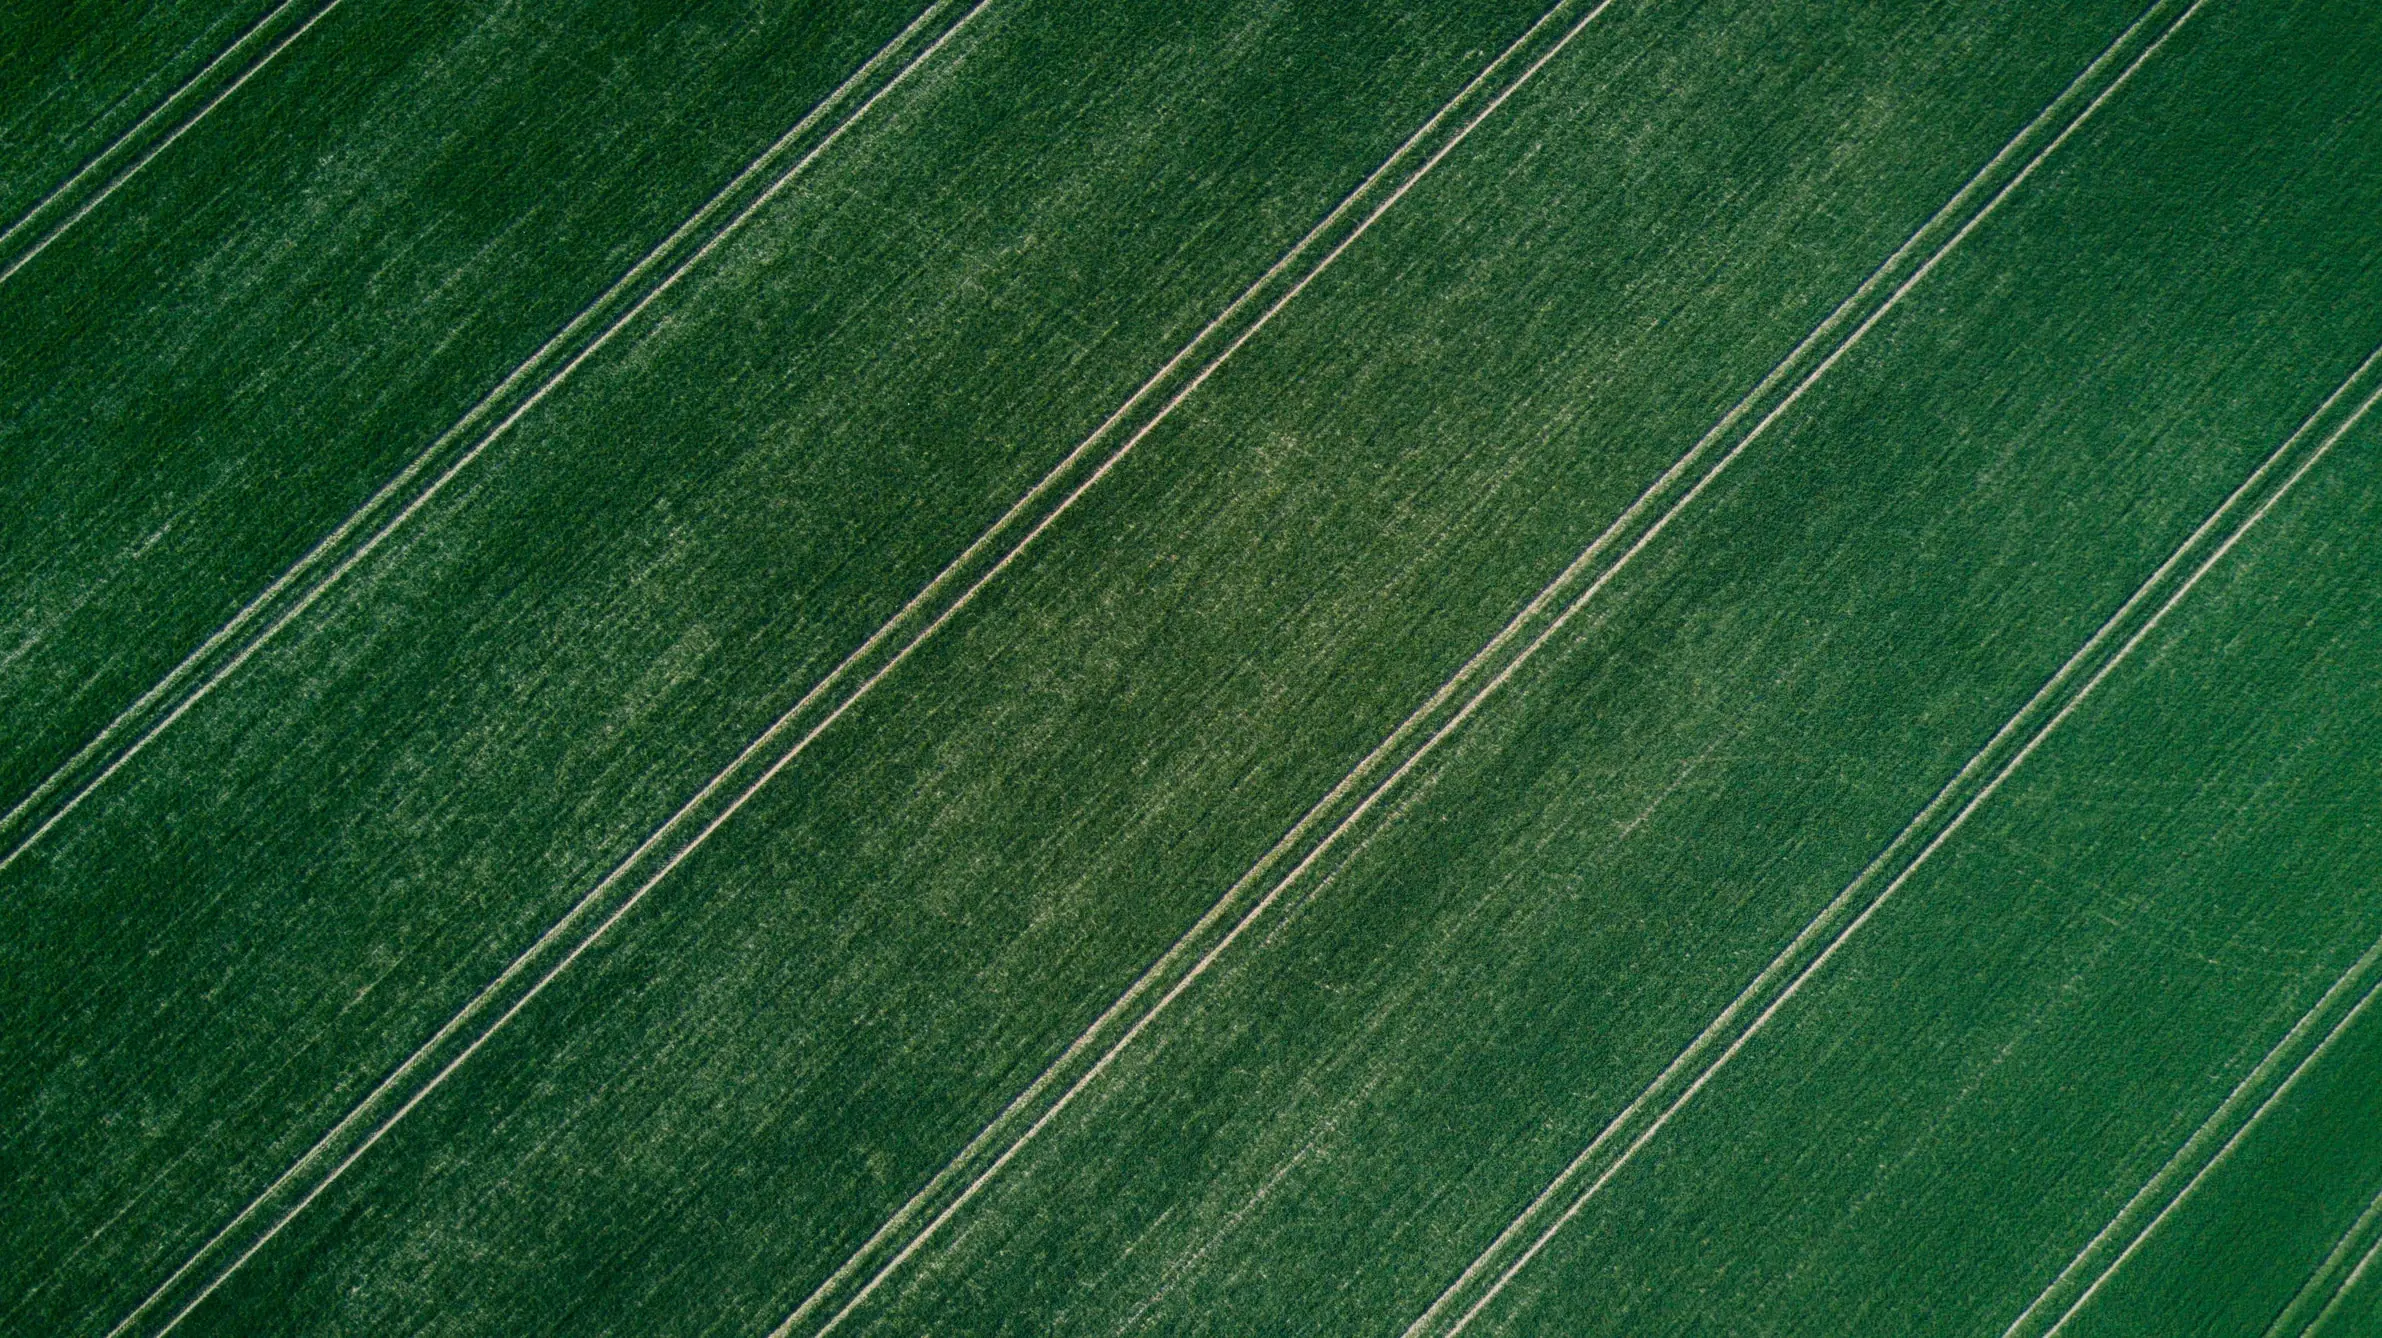 Green fieldlands aerial view